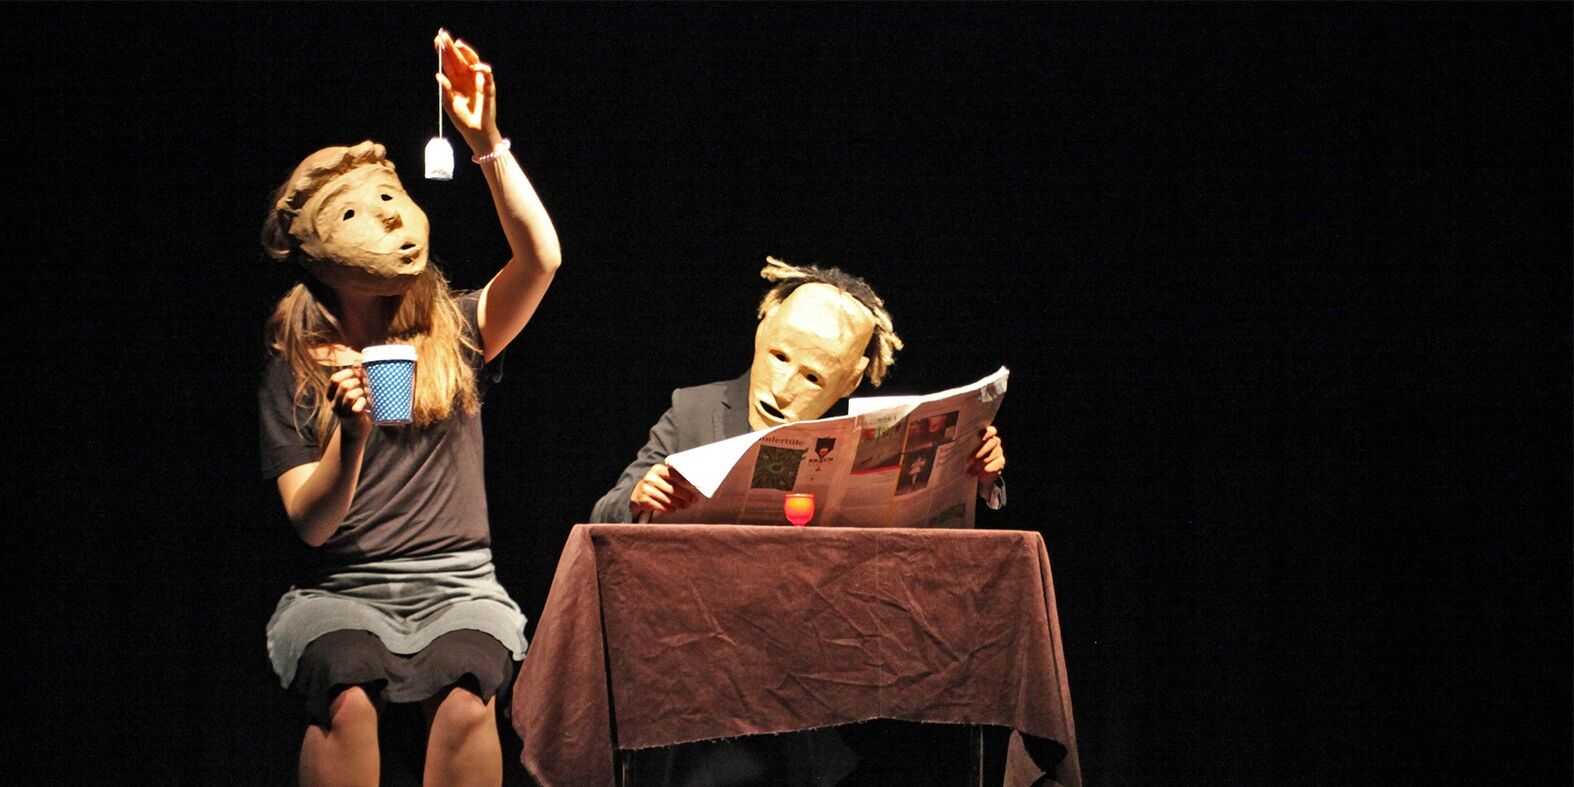 Dies ist ein Szenenfoto aus "Unterm Sprung". Zwei Schauspieler sitzen auf der Bühne und tragen Masken. Die ganz links hält eine Teetasse in der einen und einen Beutel in der anderen Hand den sie ansieht. Der andere sitzt am Tisch und liest Zeitung.